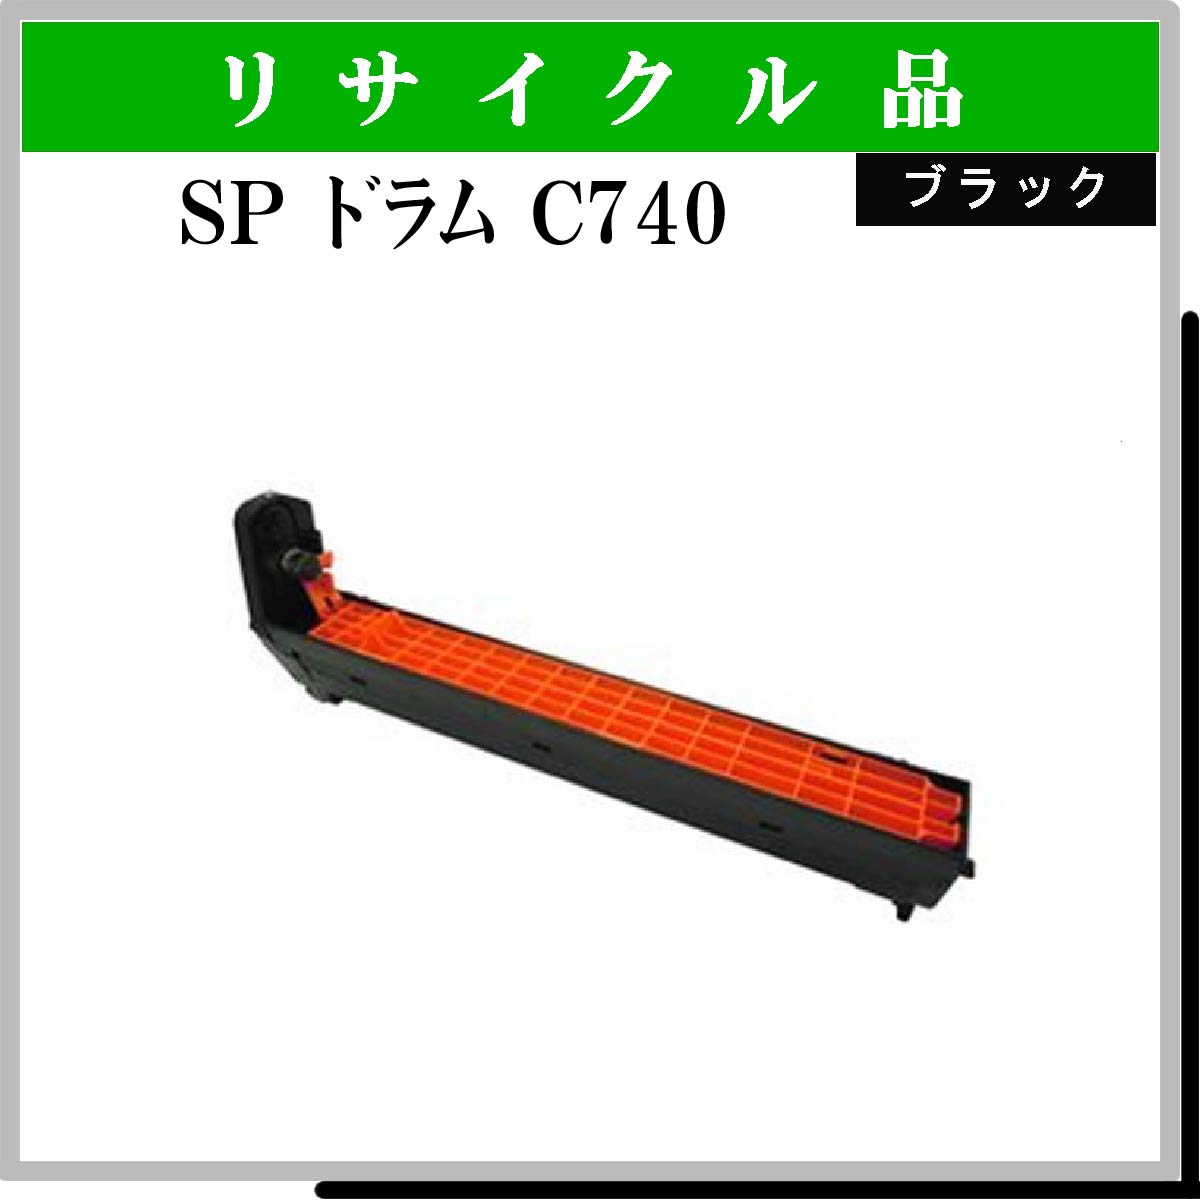 SP ﾄﾞﾗﾑﾕﾆｯﾄ C740 ﾌﾞﾗｯｸ